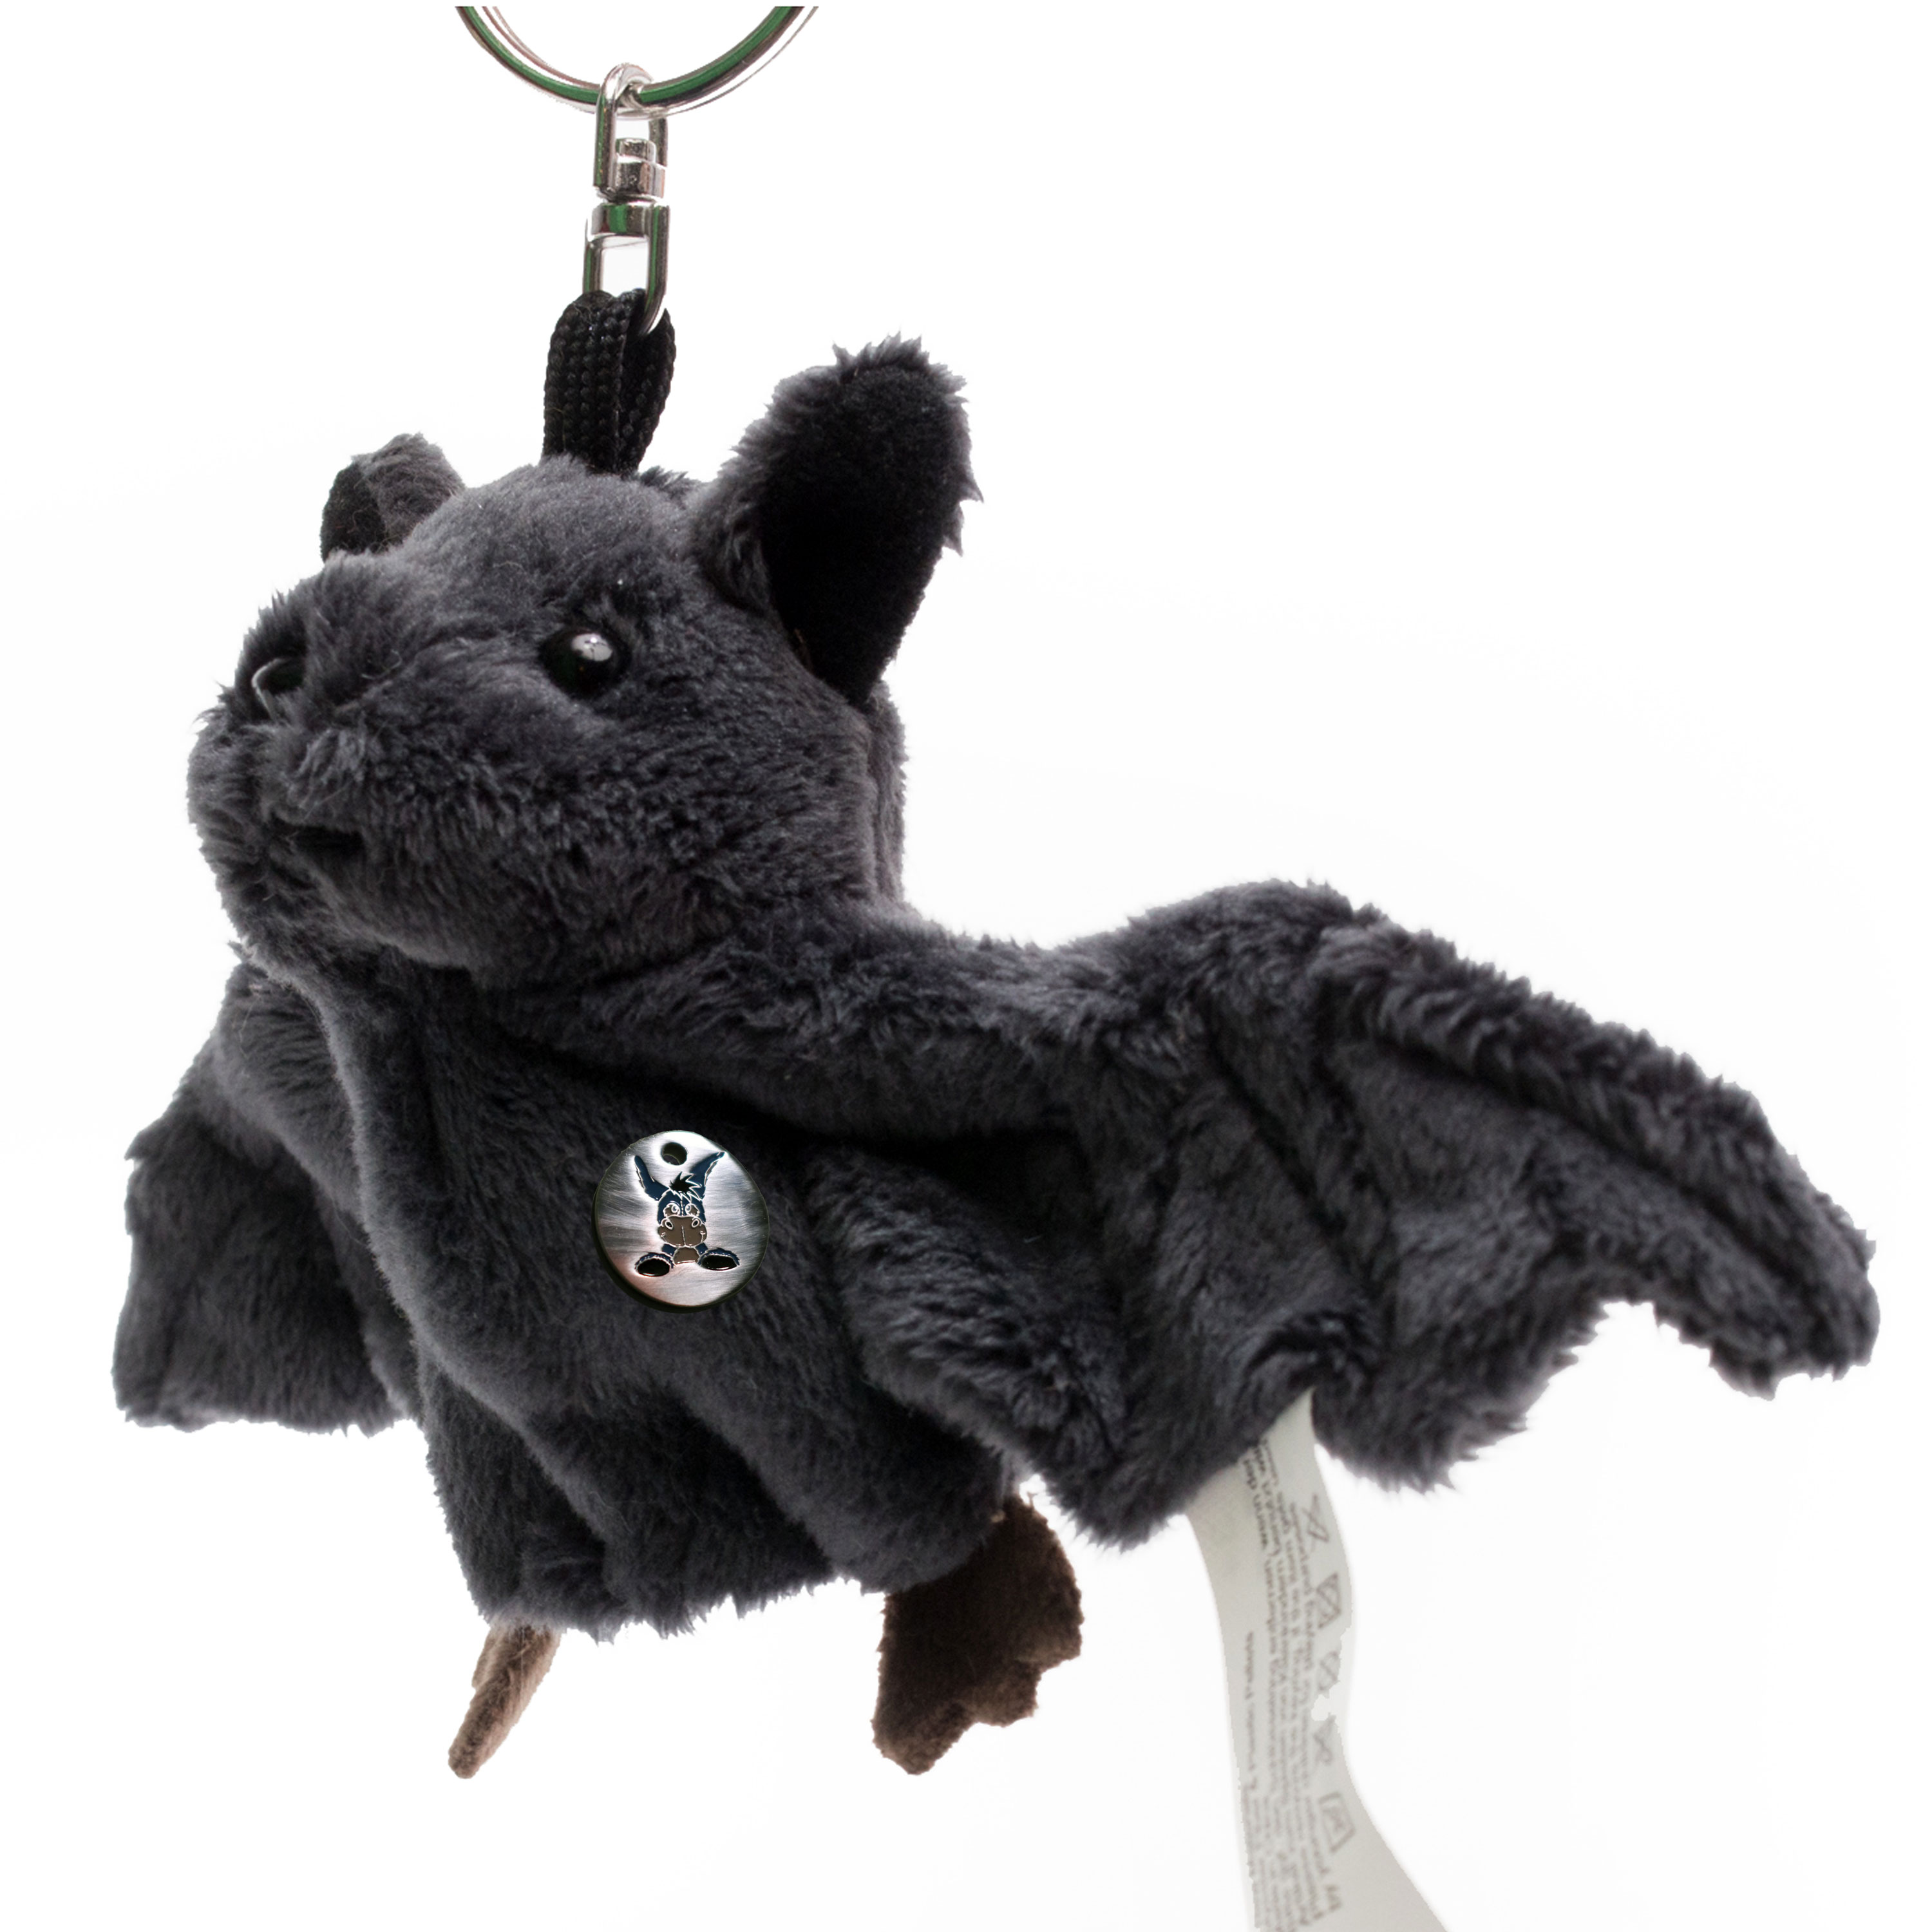 Plüsch Fledermaus Schlüsselanhänger süße kleine dunkle Fledermaus Bat 175005 